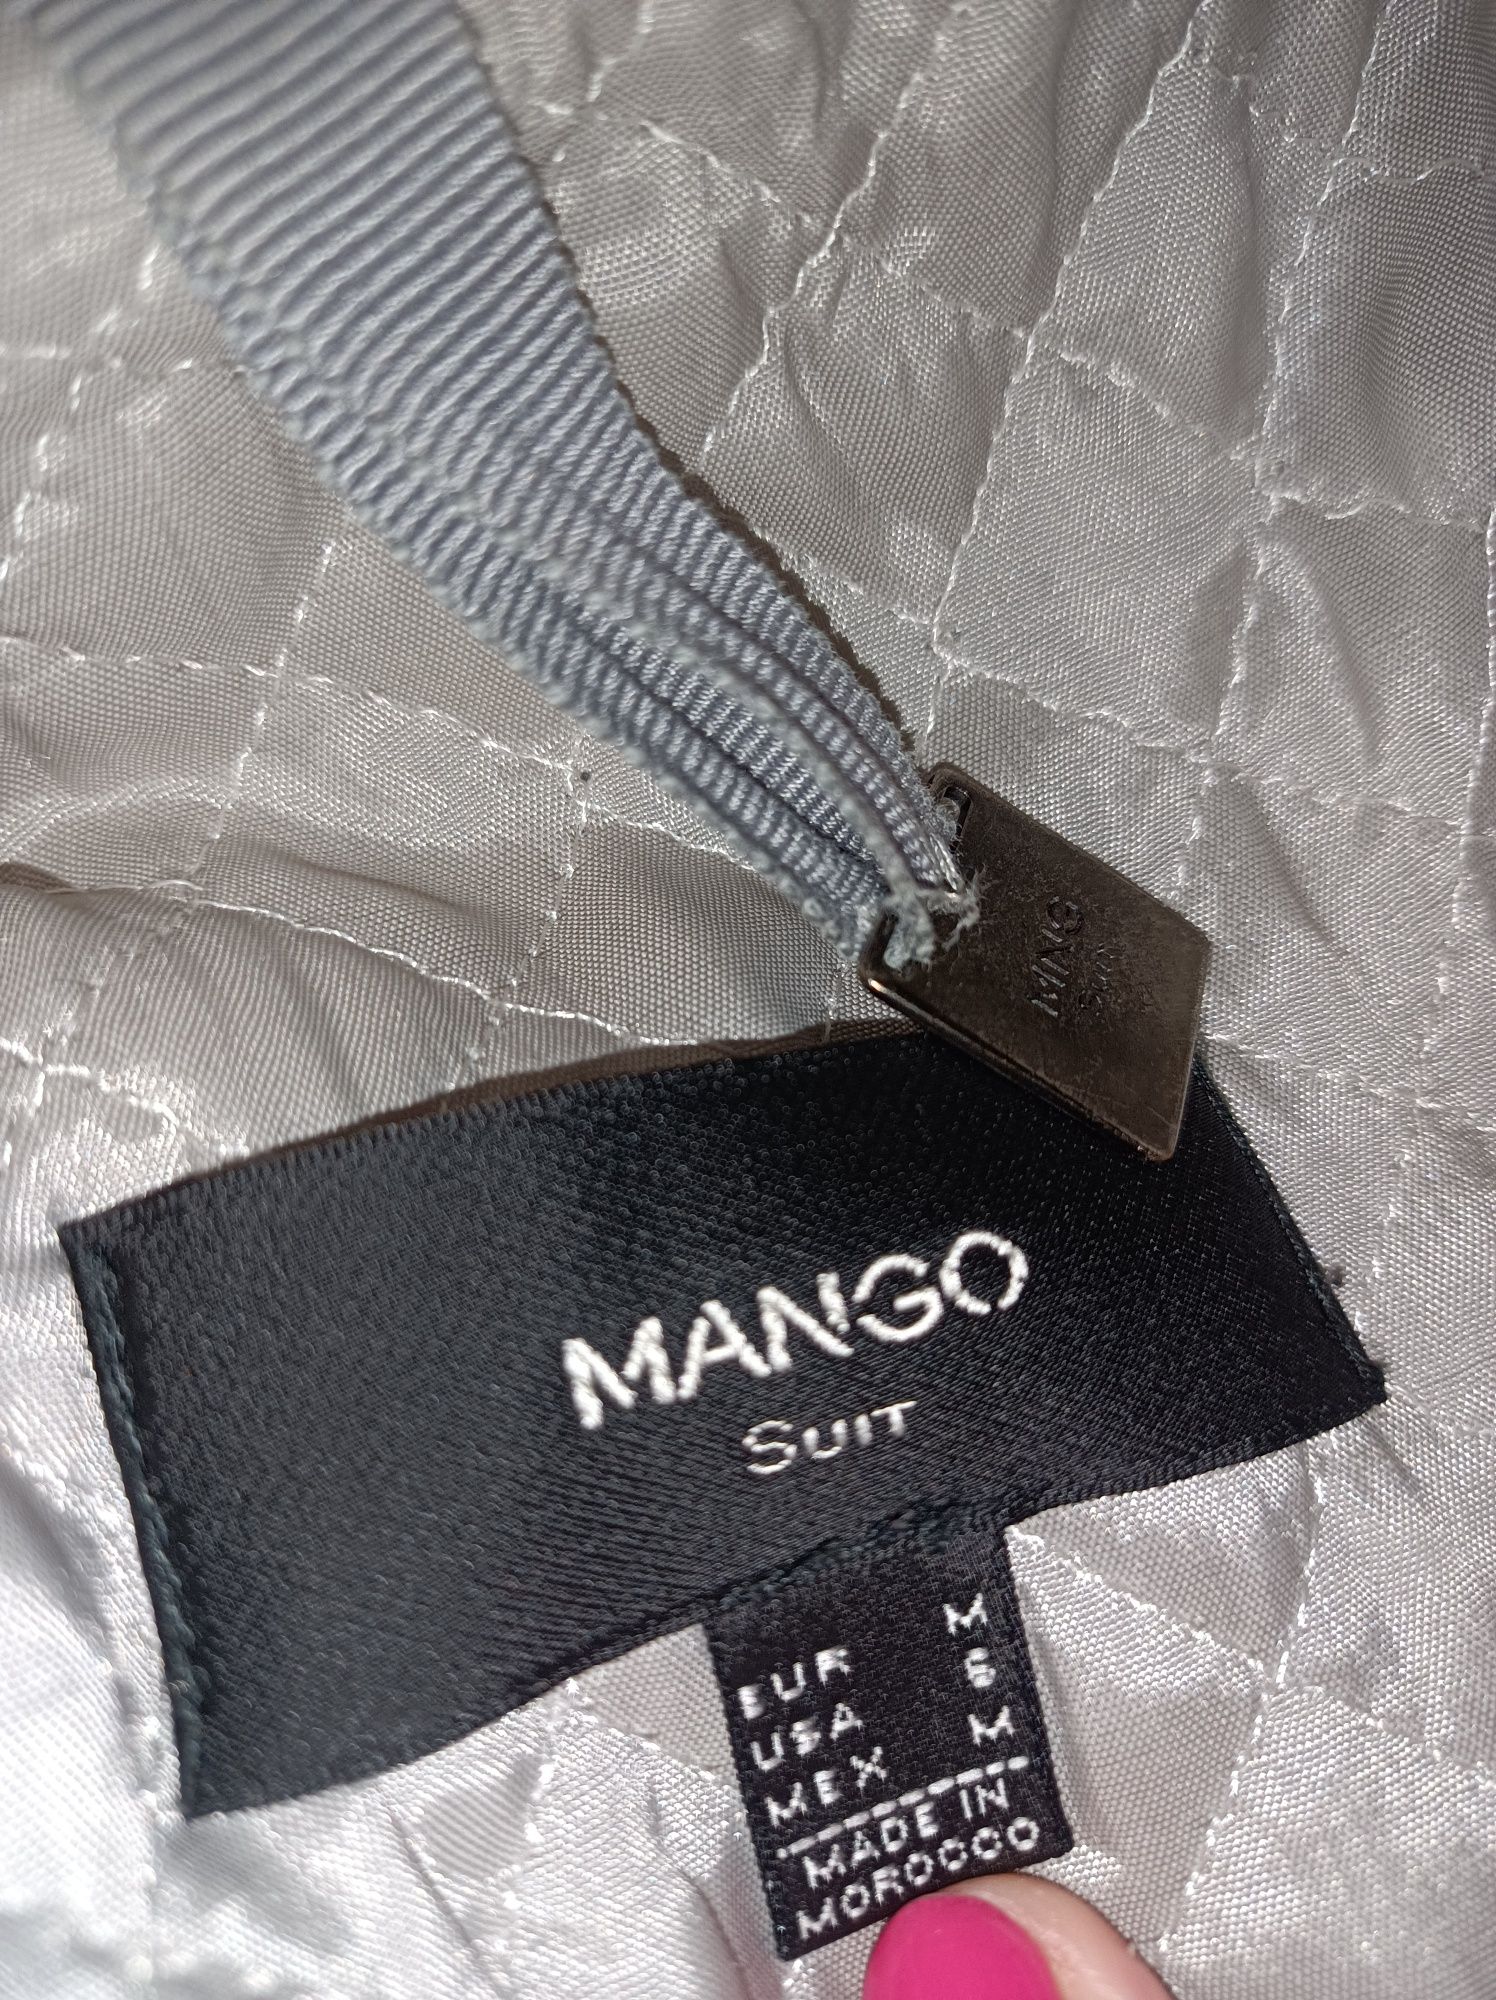 Płaszcz Mango dłuższy szary 38 M 67 %wełny wełniany